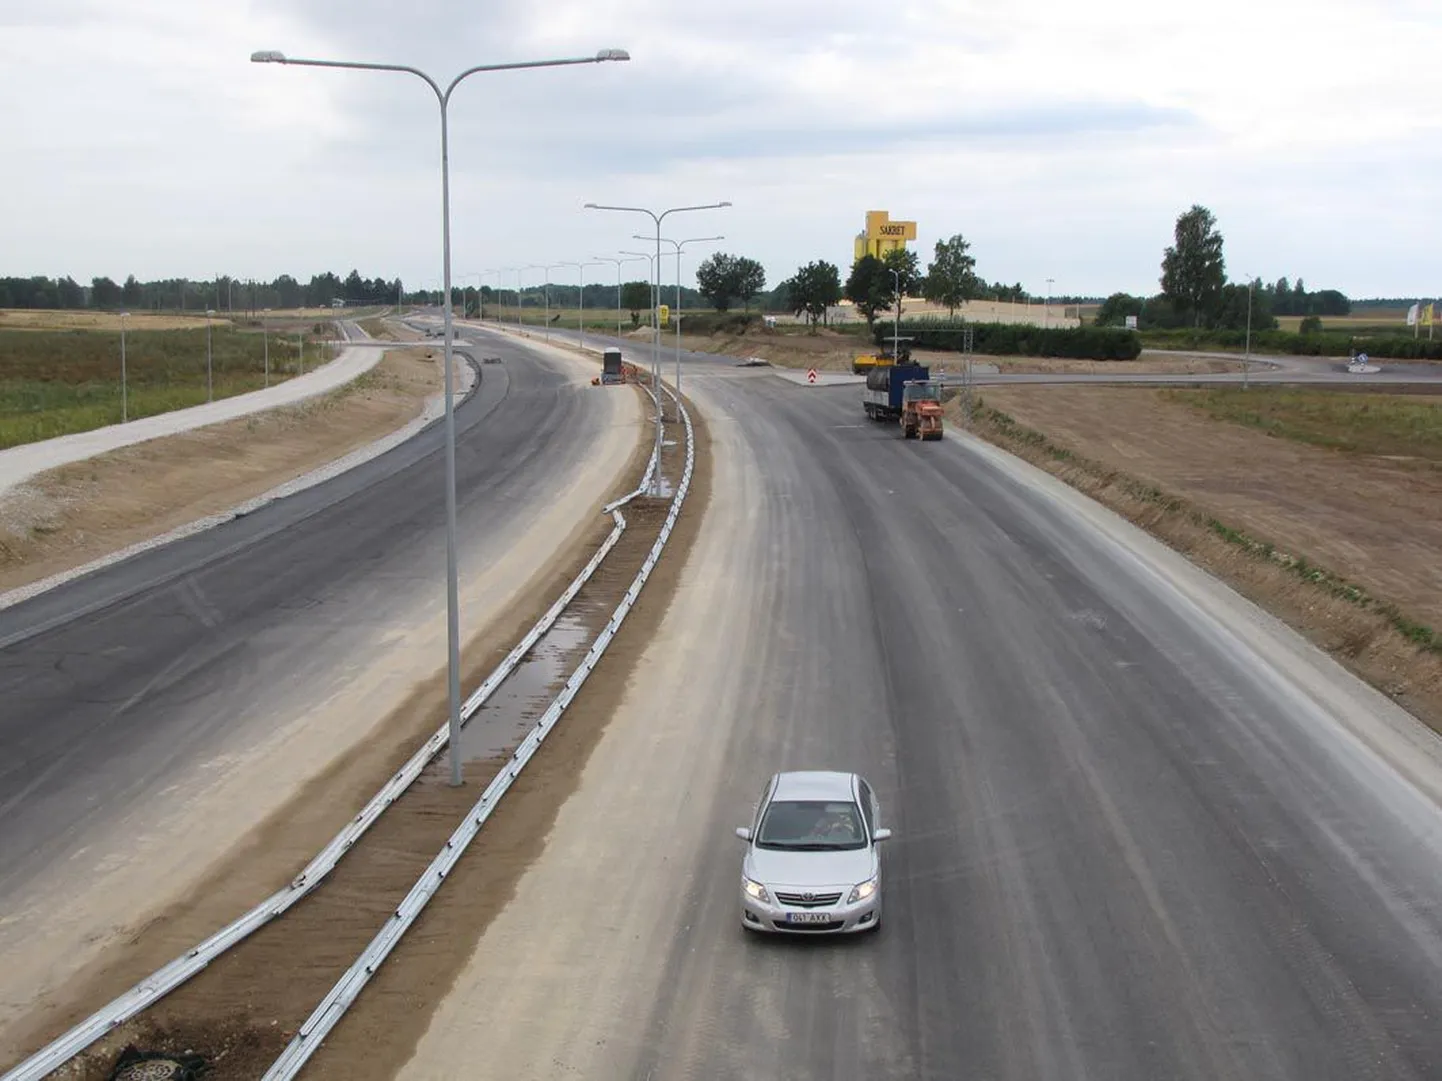 See foto on tehtud Tallinna–Tartu maantee viaduktilt, mille alt läheb läbi Pärnu–Rakvere maantee.